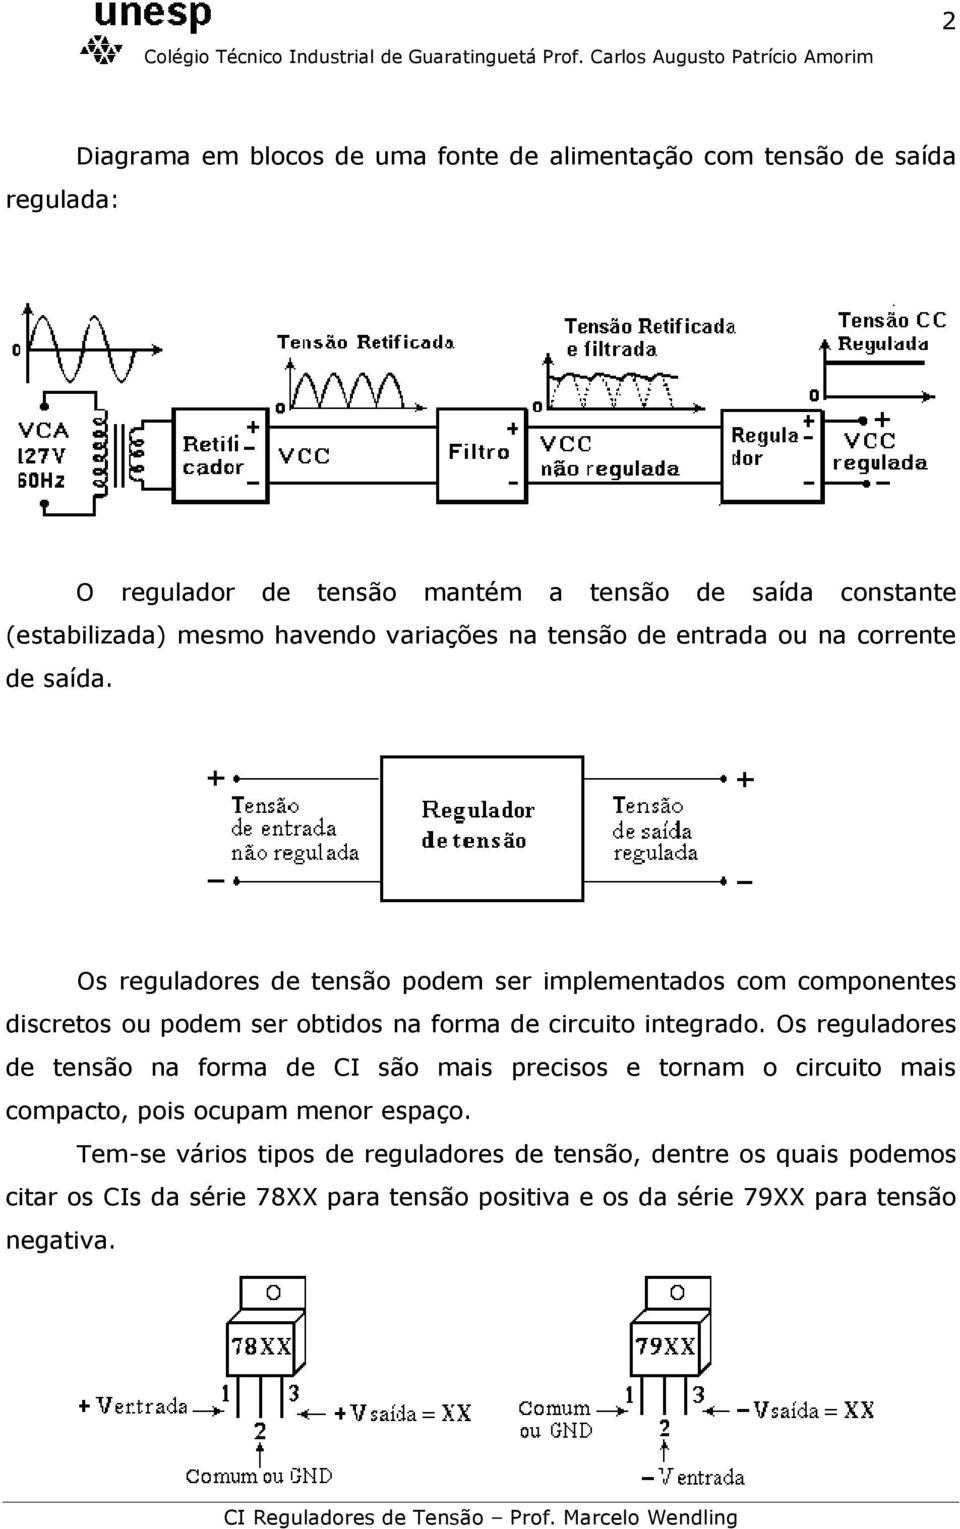 Os reguladores de tensão podem ser implementados com componentes discretos ou podem ser obtidos na forma de circuito integrado.